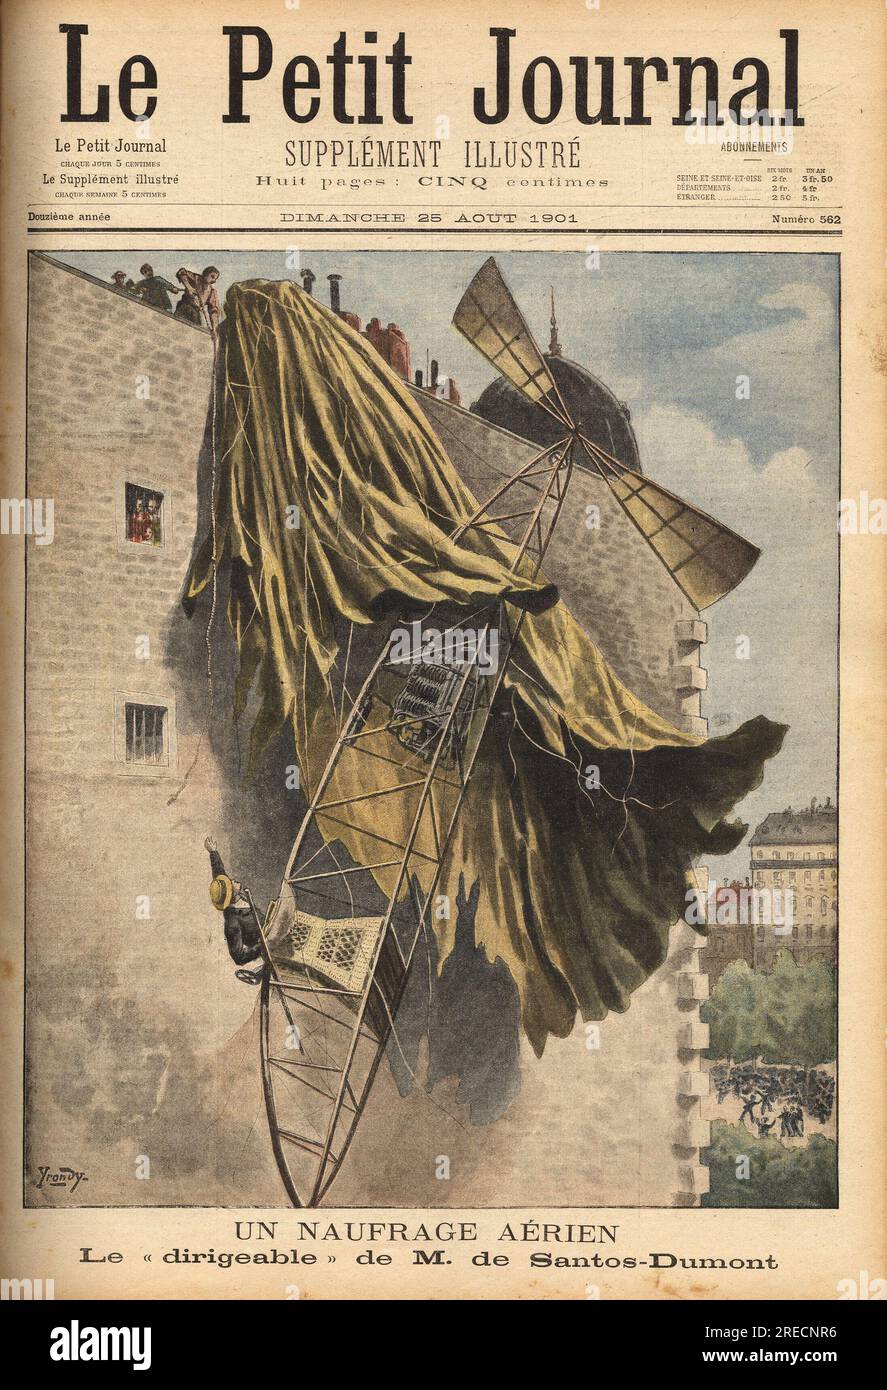 Naufrage aerien d' Alberto Santos Dumont (1873-1932), pionnier bresilien de l'aviation, concepteur des premiers ballons dirigeables, alors qu'il concourrait pour le prix Deutsch, pour le trajet aller-retour de Saint Cloud a la Tour Eiffel en moins de 30 minutes par les airs, mais son ballon a accroche le toit d'une maison du quai de Passy, l'aeronaute n'est pas blesse et s'engage a reconcourrir sous moins de 15 jours. Gravure in 'Le petit journal' 2581901.  . Stock Photo